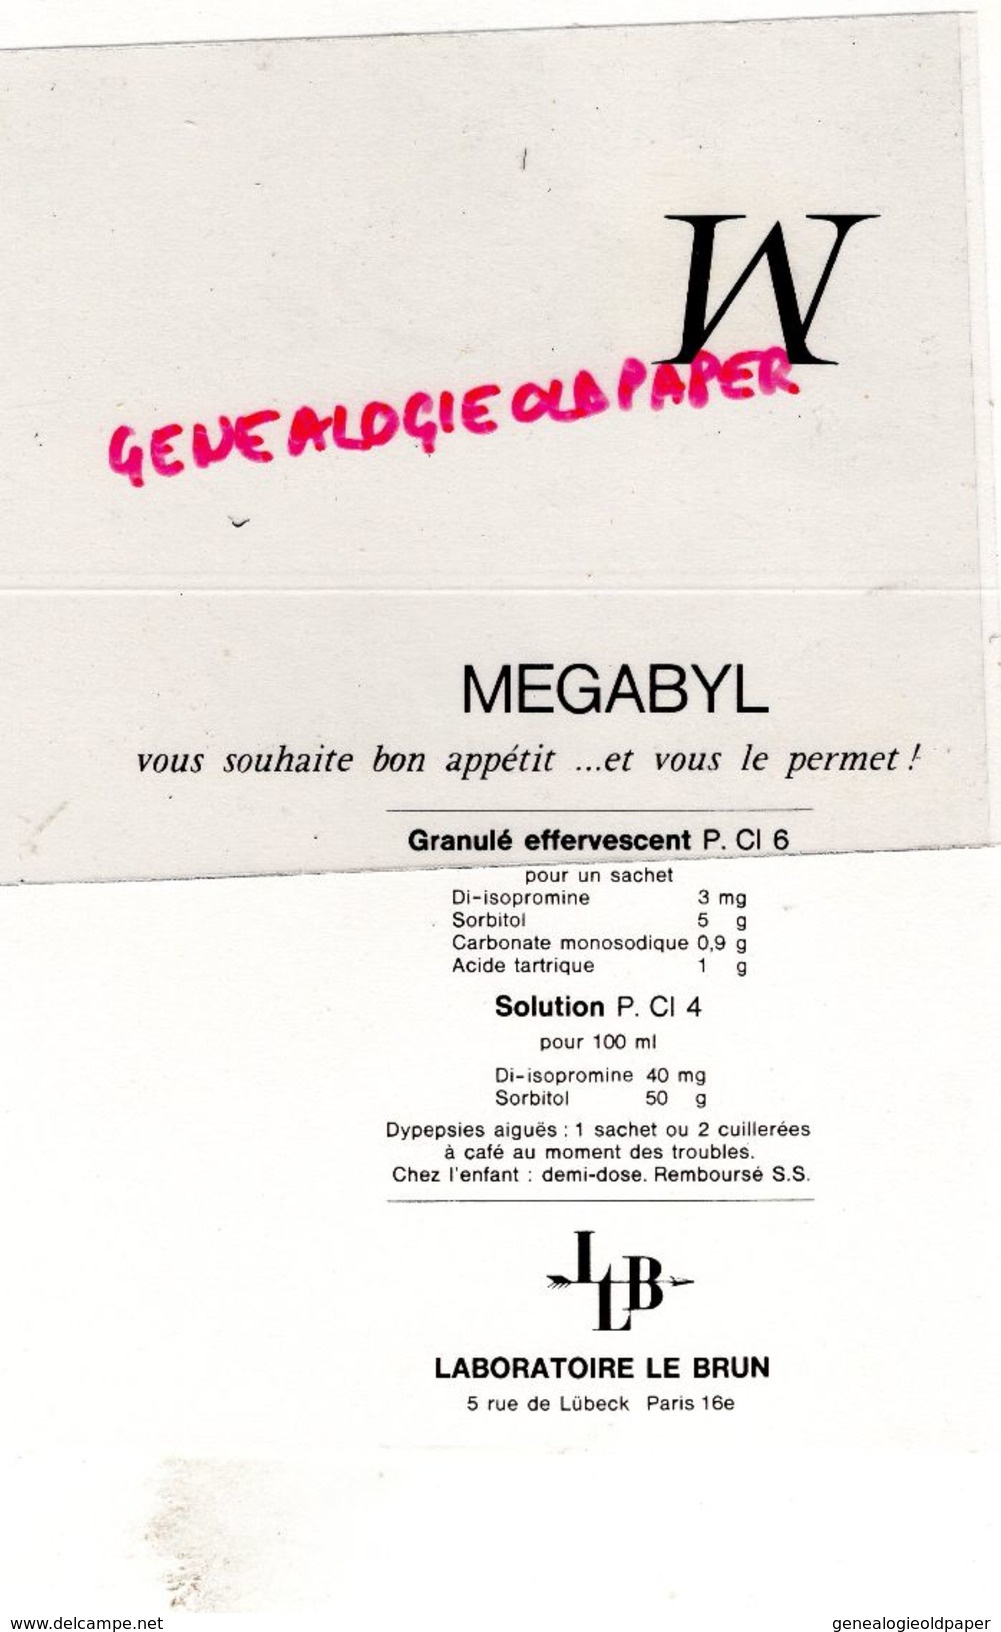 RARE BUVARD ILLUSTRATEUR JEAN BELLUS- PHARMACIE MEGABYL- LABORATOIRE LE BRUN -5 RUE DE LUBECK PARIS- DU CAVIAR CUISINE - Produits Pharmaceutiques